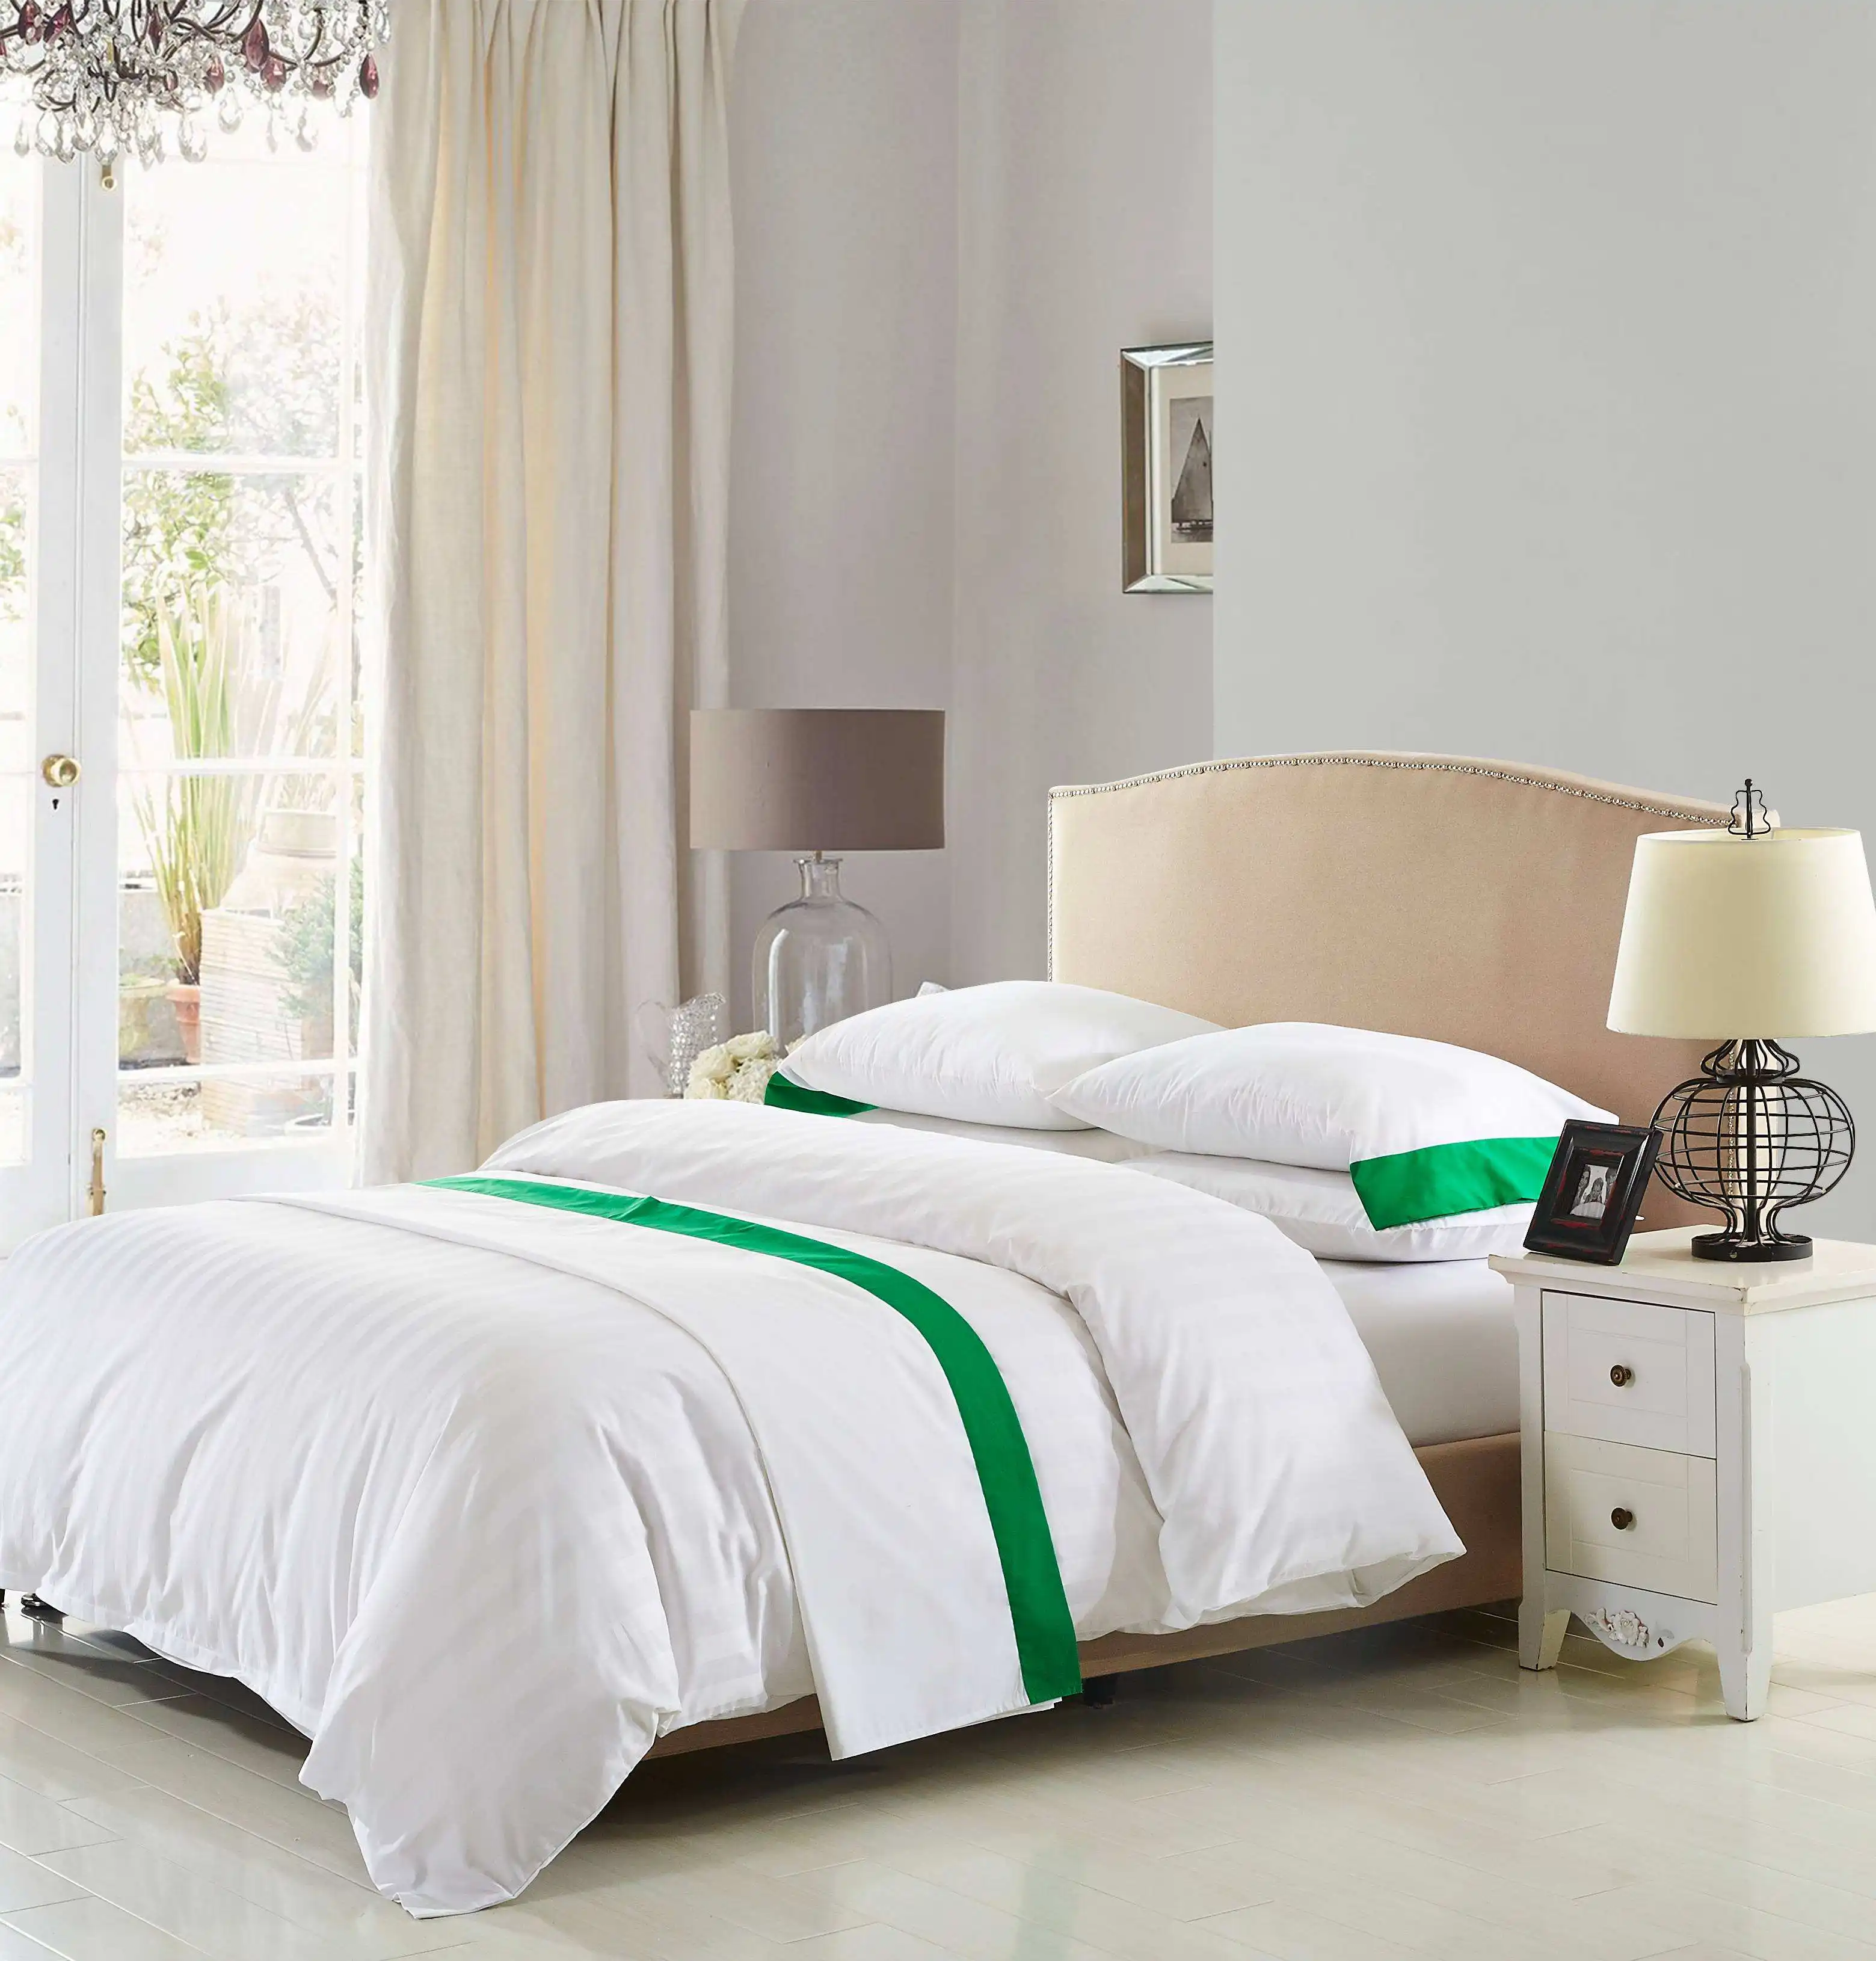 होटल बिस्तर सेट के लिए उच्च गुणवत्ता वाली सफेद किंग साइज 100% ऑर्गेनिक कॉटन साटन चादर और तकिया कवर